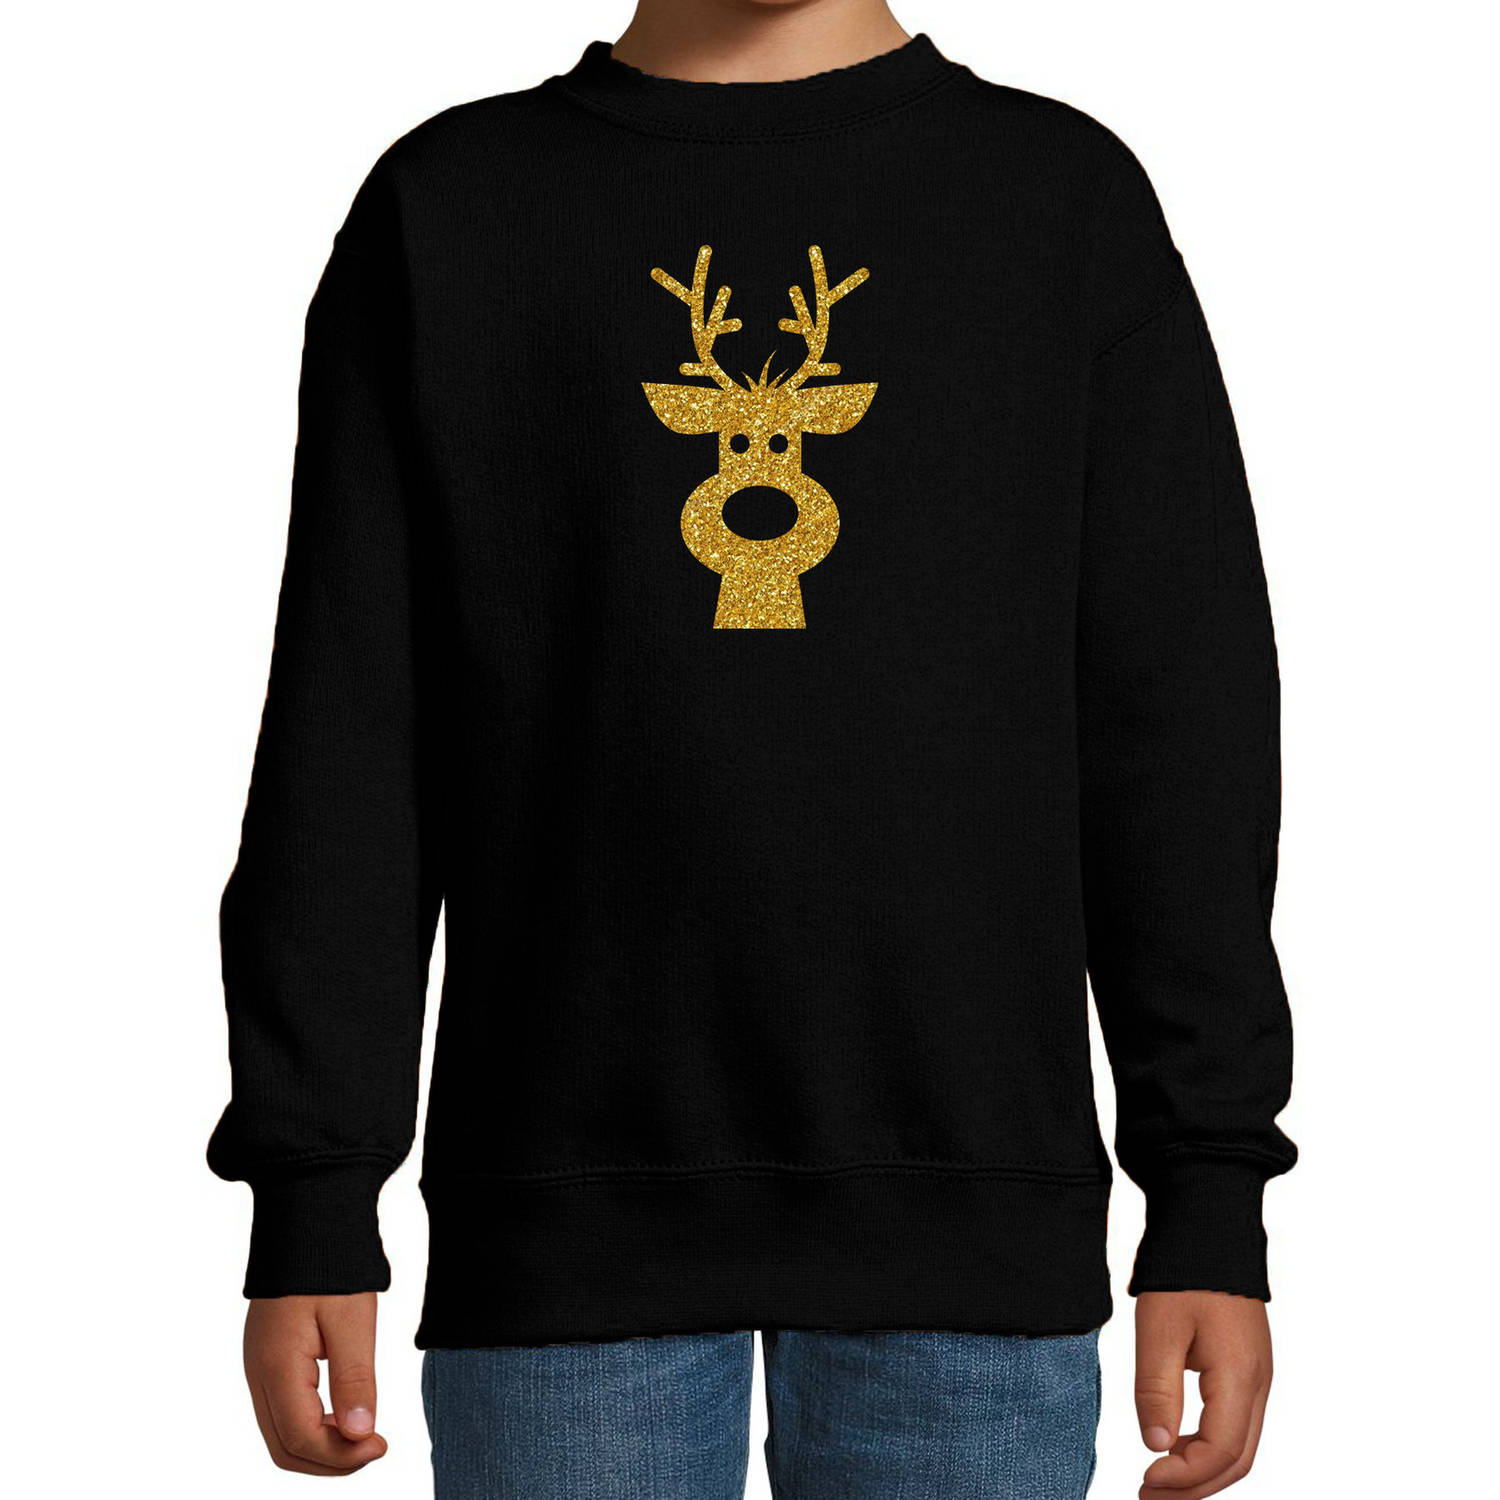 Rendier hoofd Kerstsweater / Kersttrui zwart voor kinderen met gouden glitter bedrukking 5-6 jaar (110/116) - kerst trui